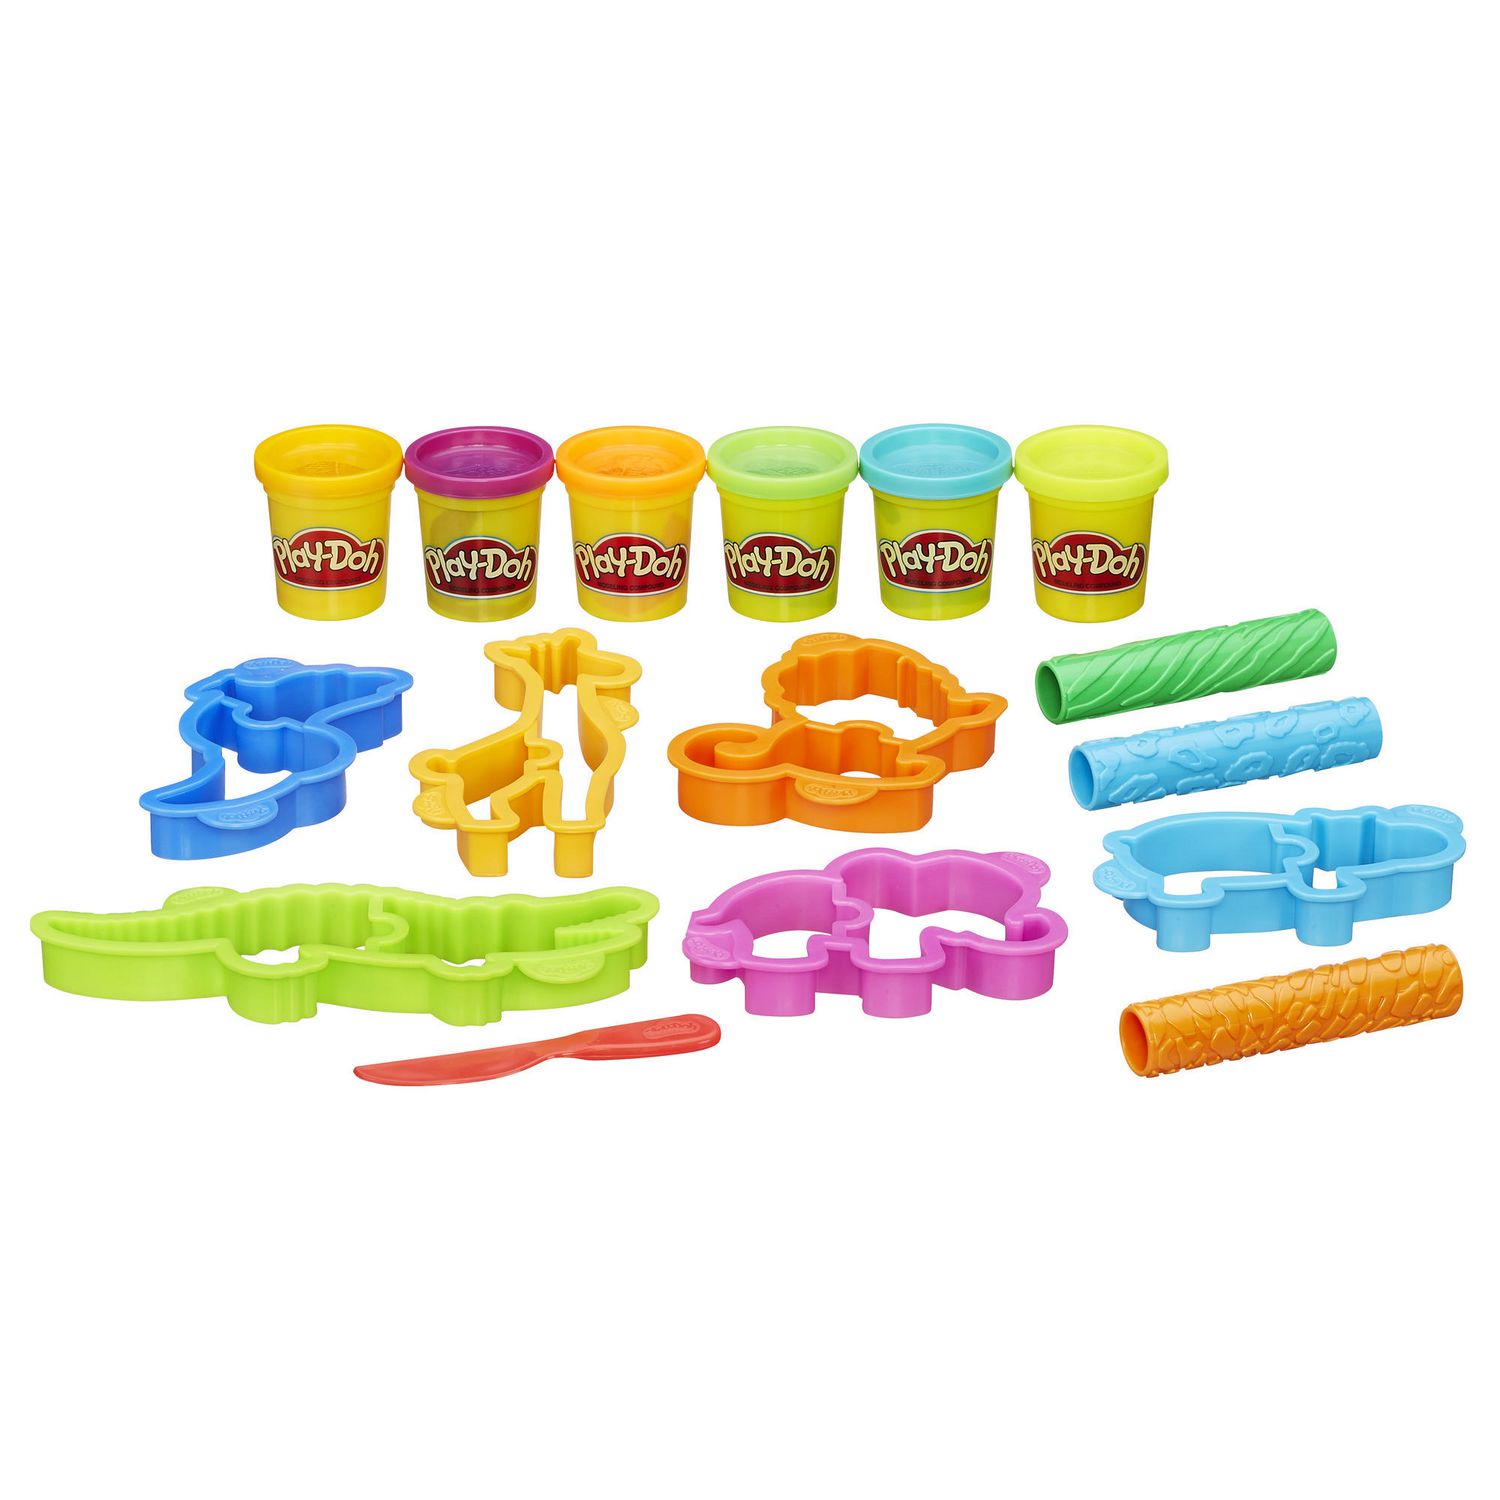 Play-Doh Wheels, Monster Truck, jouet pour enfants avec voiture et 4  couleurs de pâte Play-Doh atoxique dont la pâte Terrain, dès 3 ans 